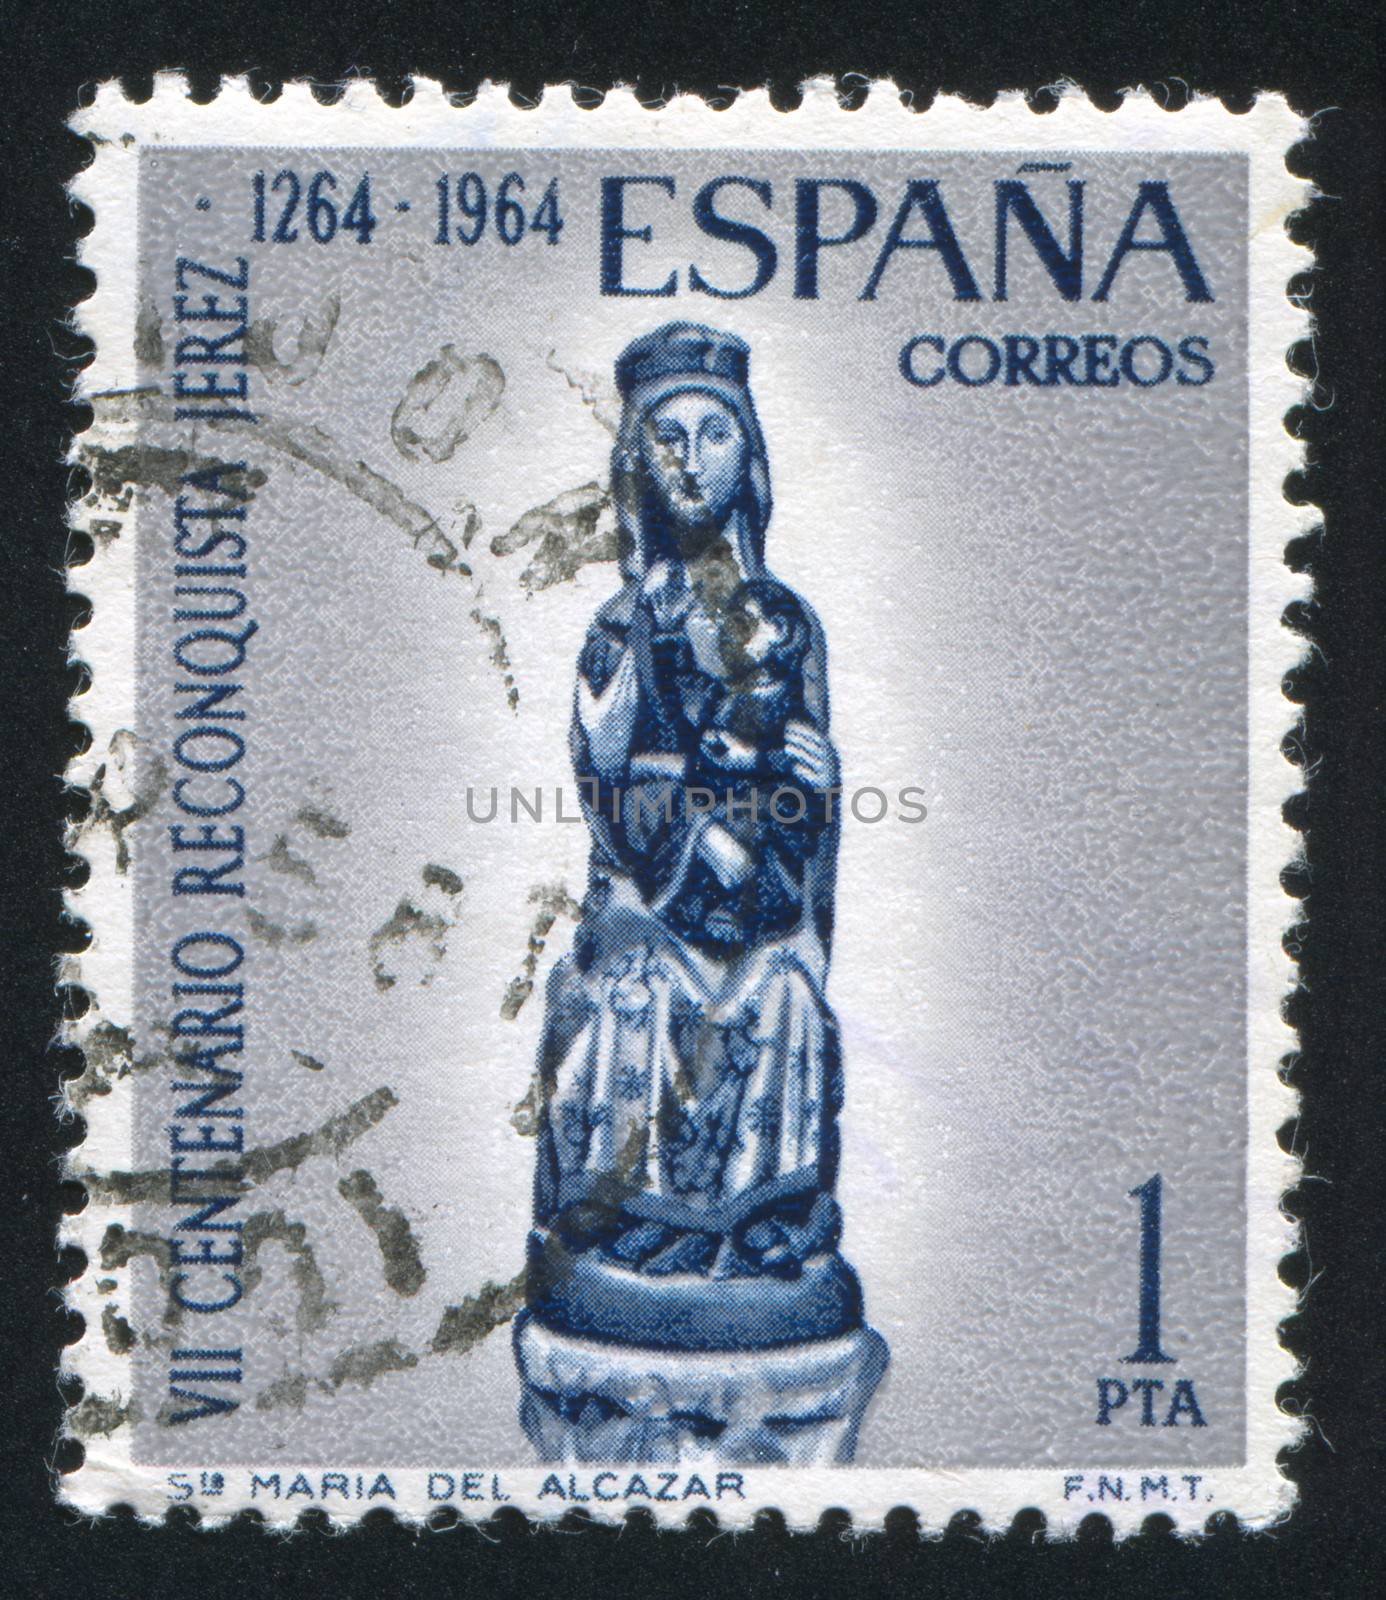 St Maria Del Alcazar by rook